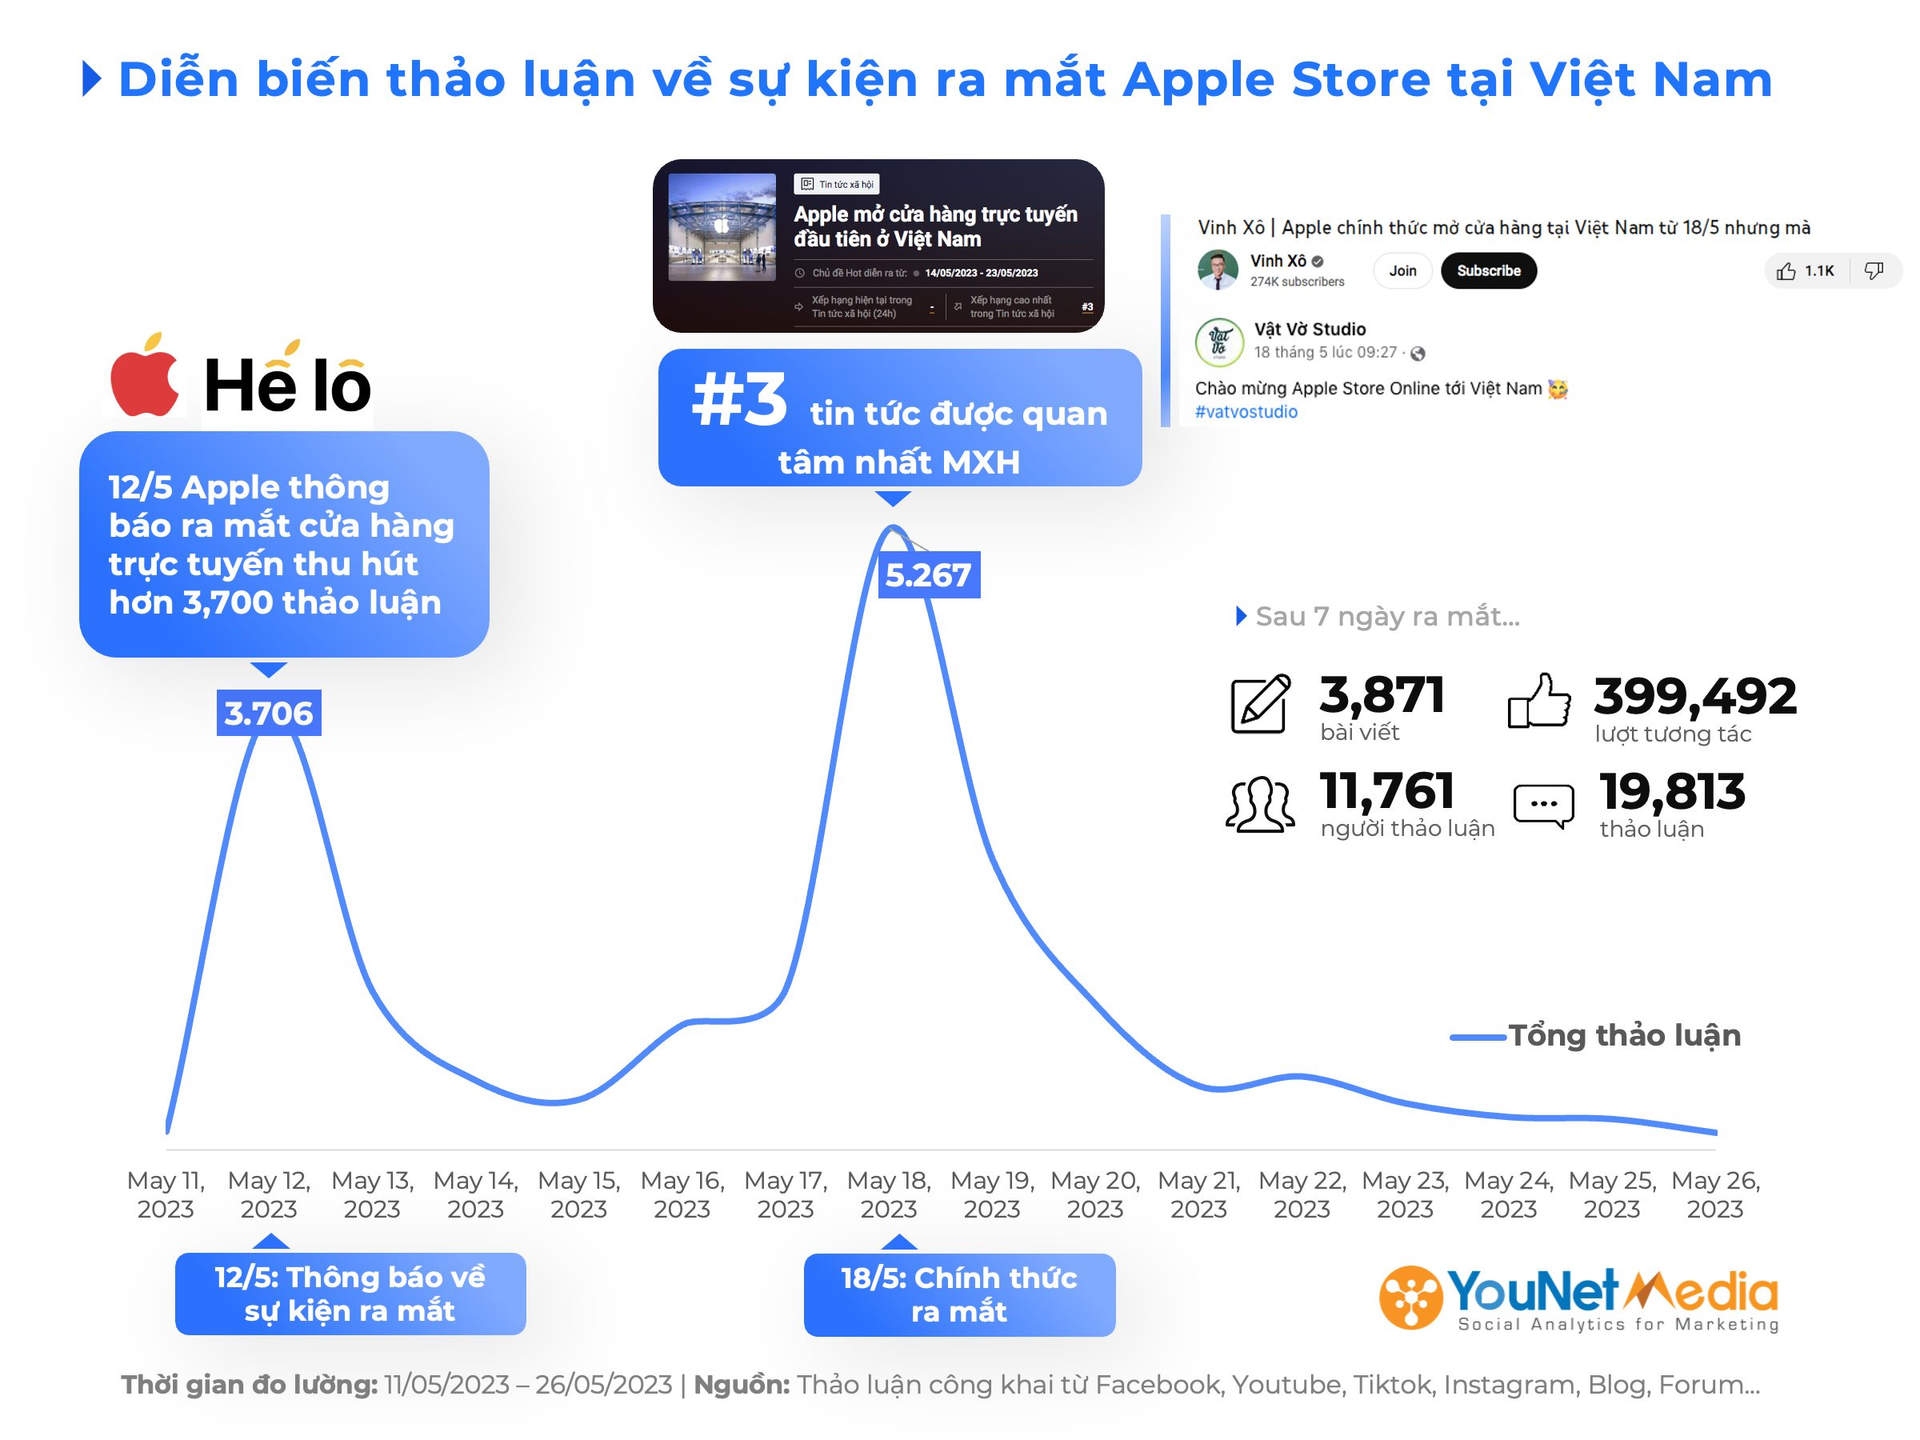 Cửa hàng trực tuyến Apple Việt Nam sau 2 tuần mở cửa: Cứ 10 người lại có 6 người than phiền giá cao, chỉ 2 người chọn mua - Ảnh 2.